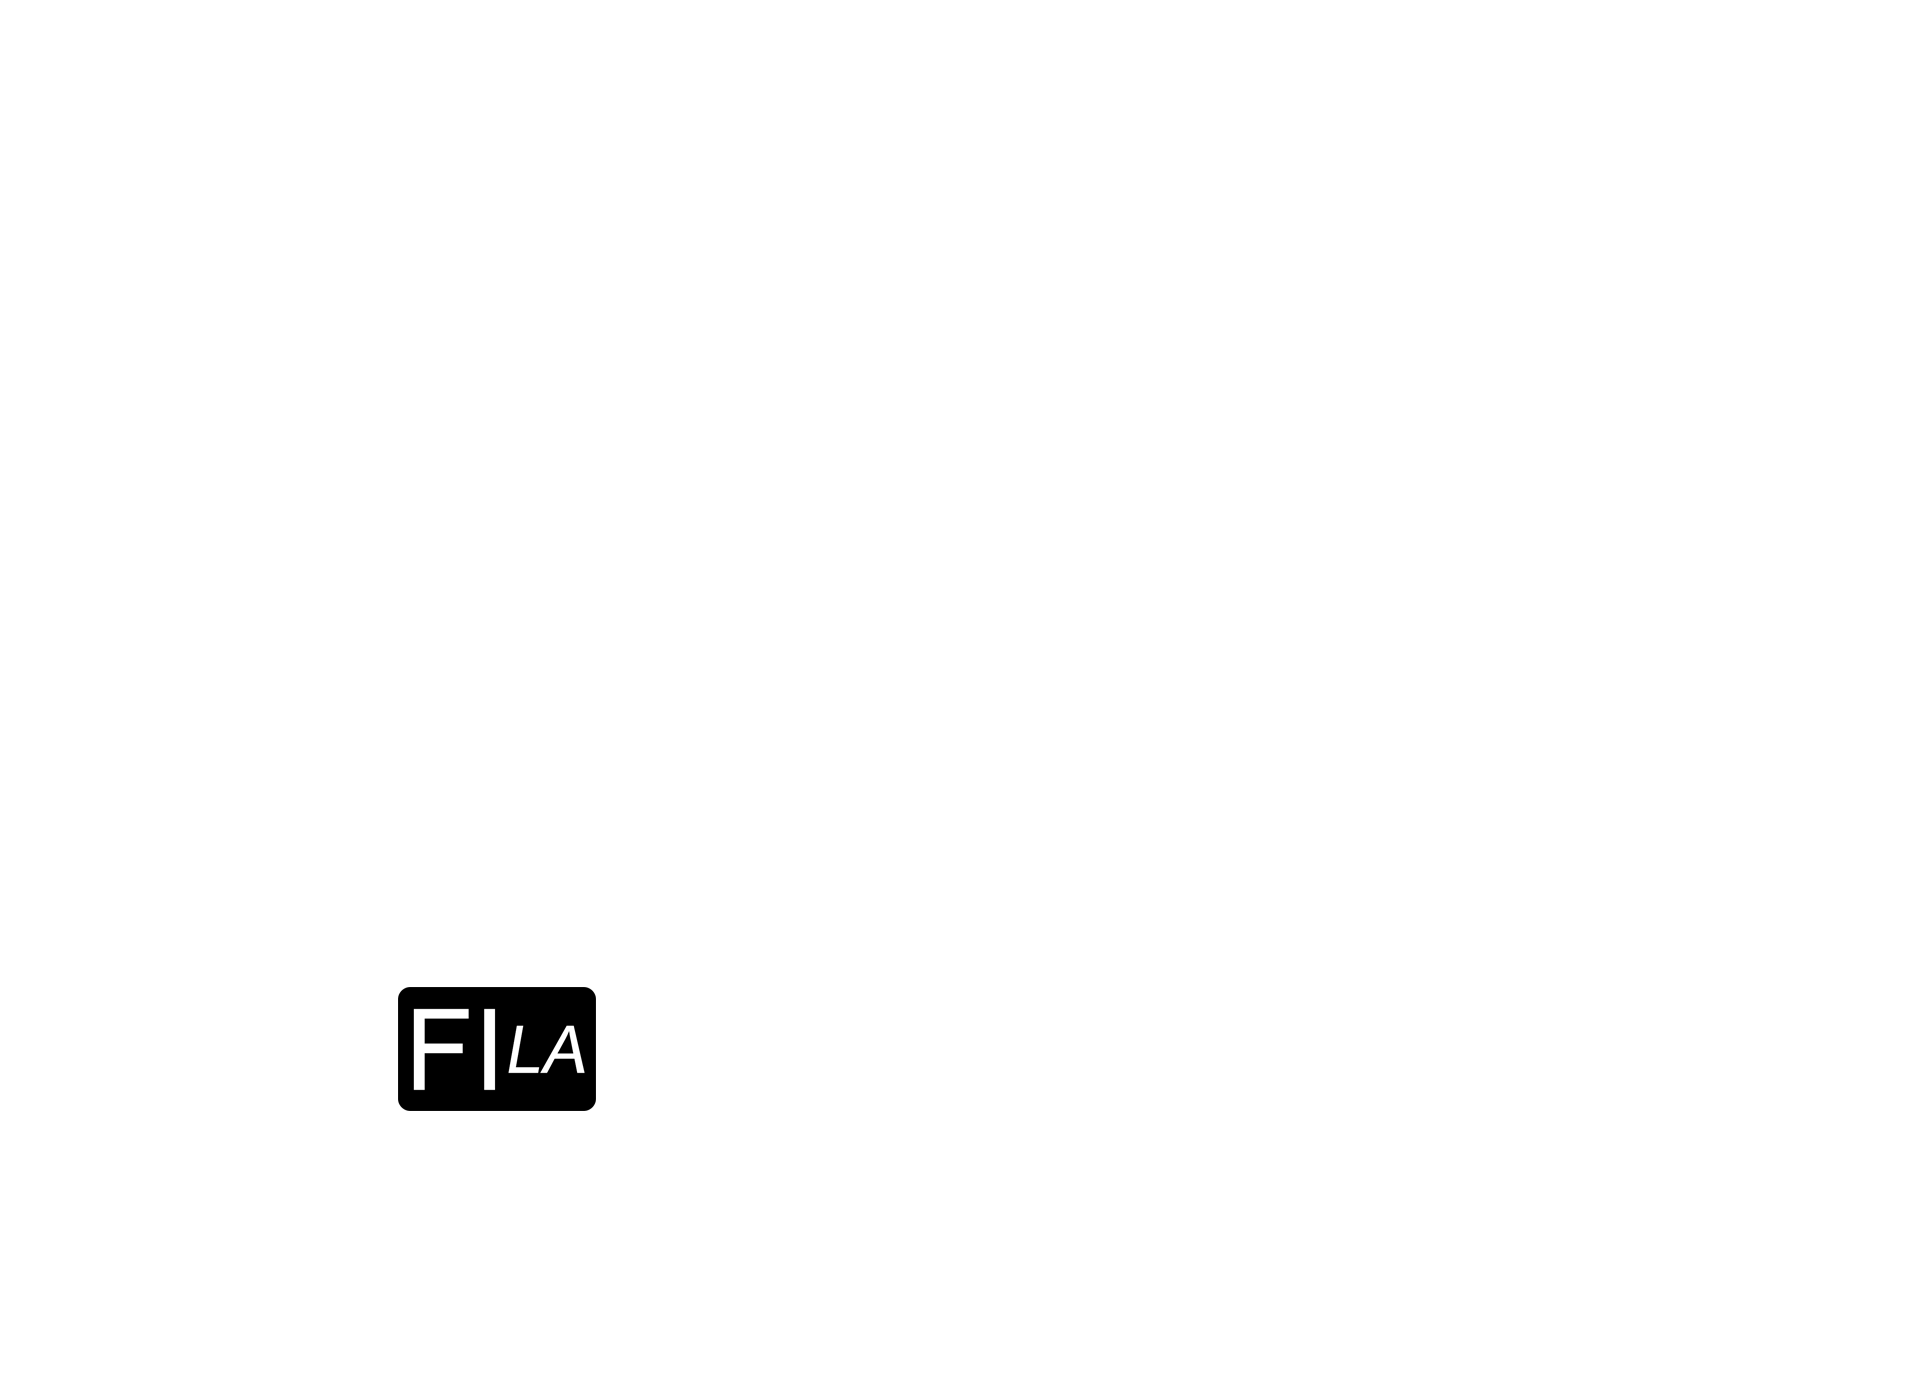 Film Invasion Los Angeles